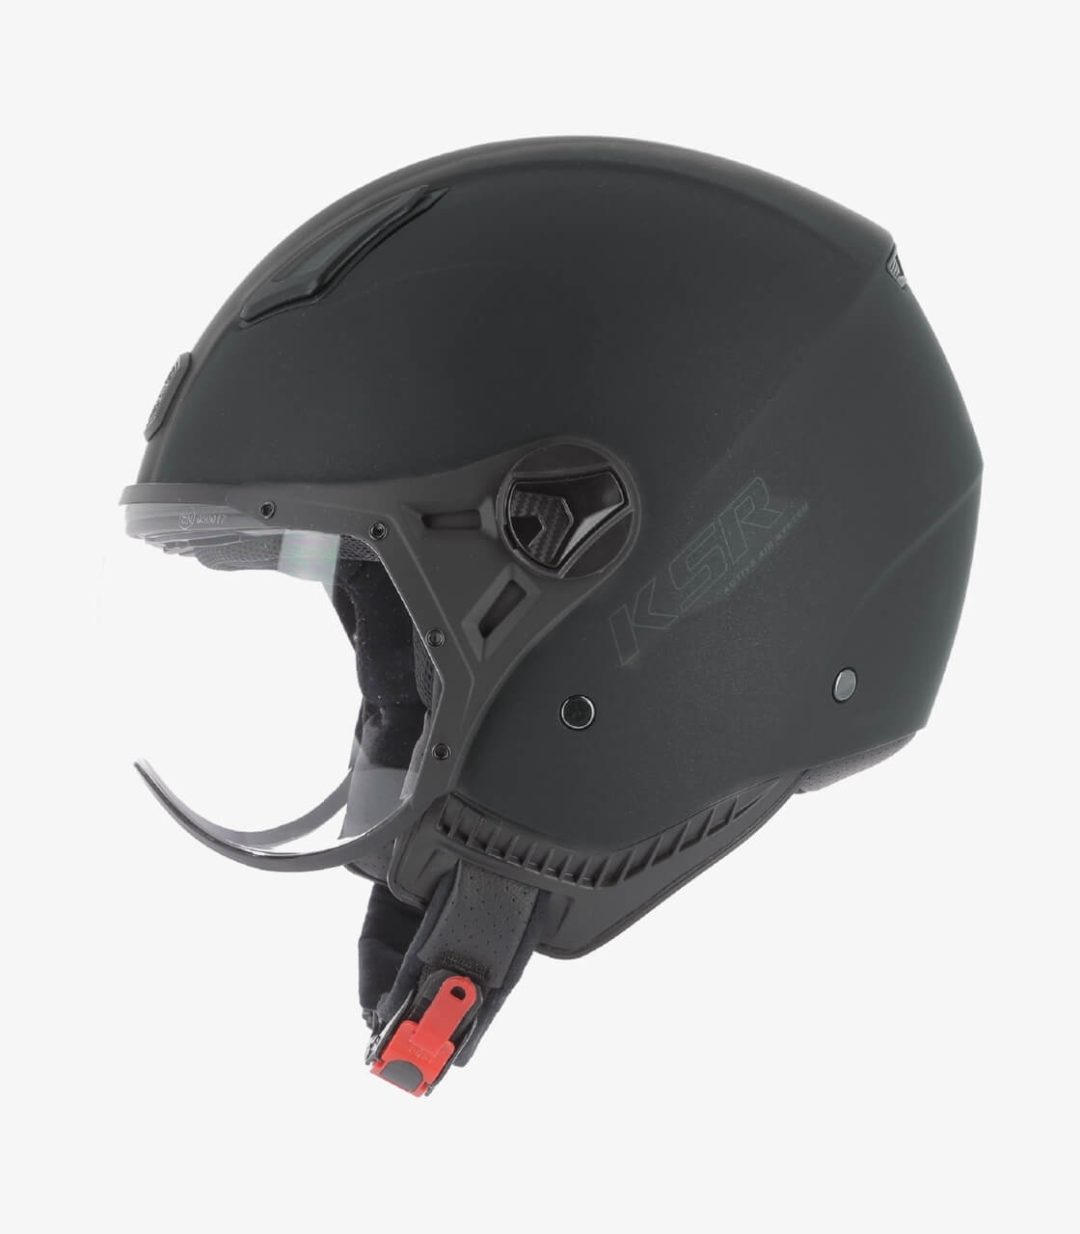 astone-ksr-2-matt-black-gunmetal-open-face-helmet-ksr2g-mbg (7)